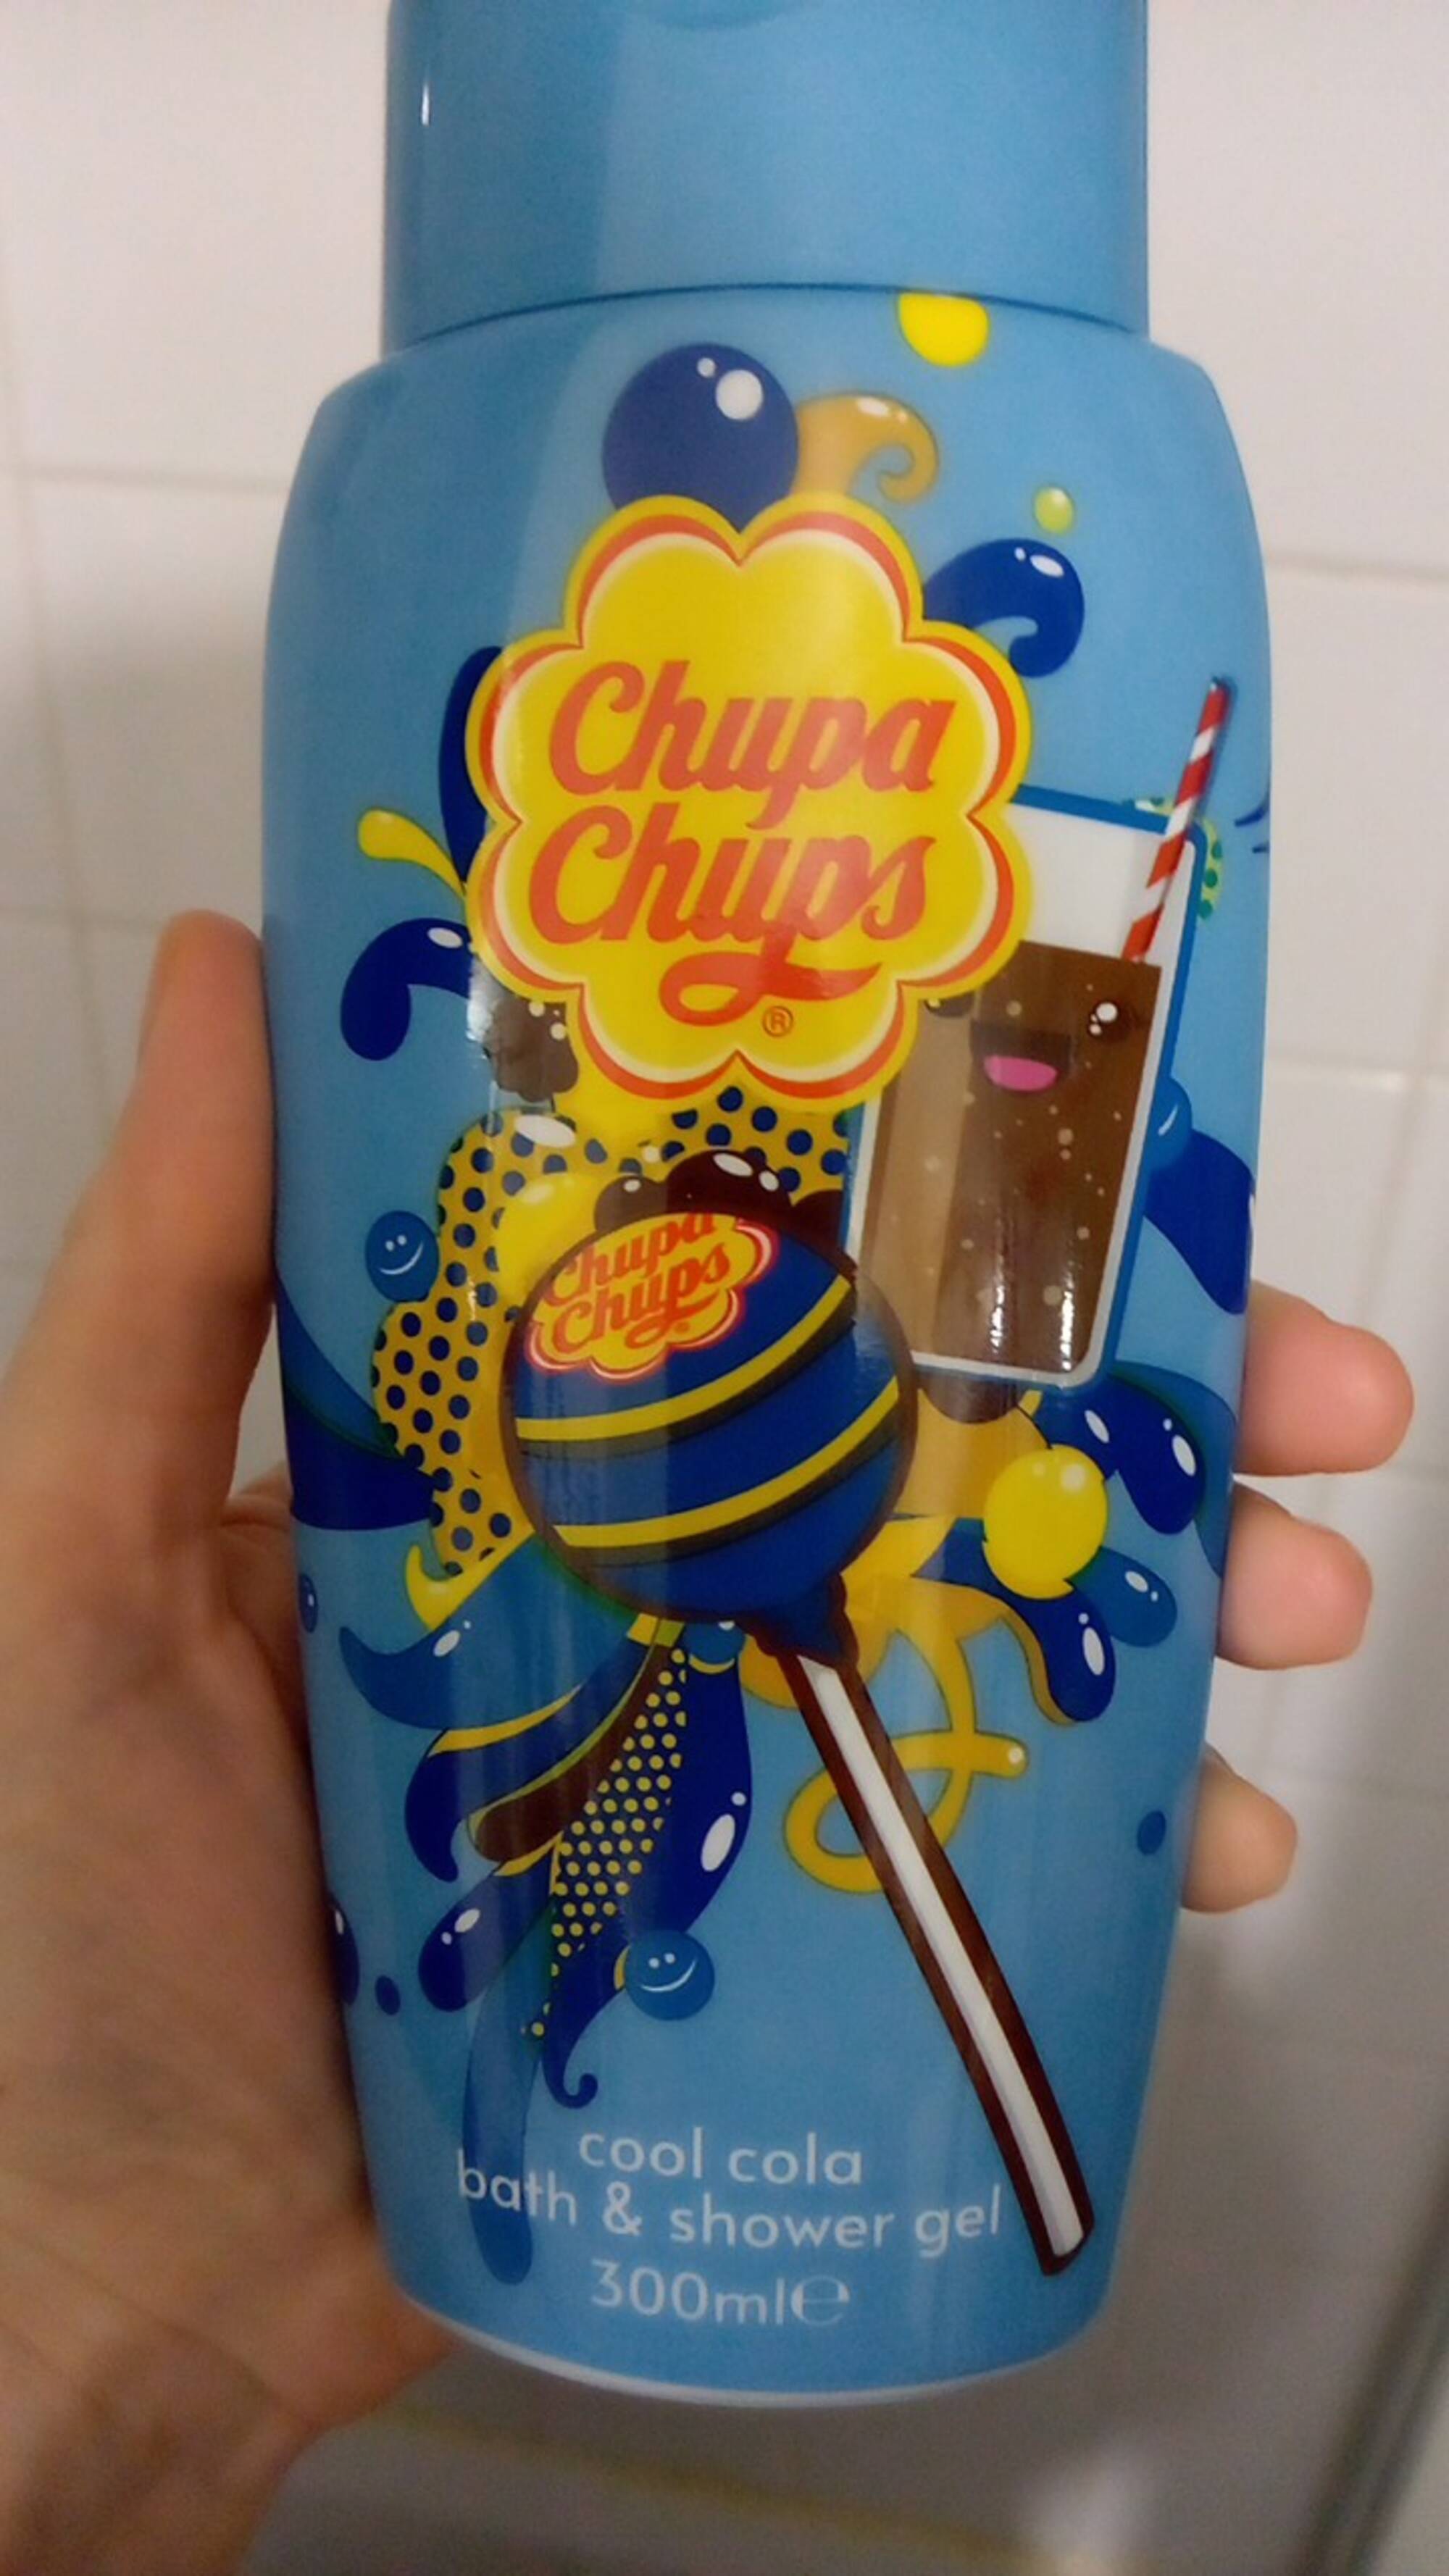 CHUPA CHUPS - Bath & shower gel cool cola